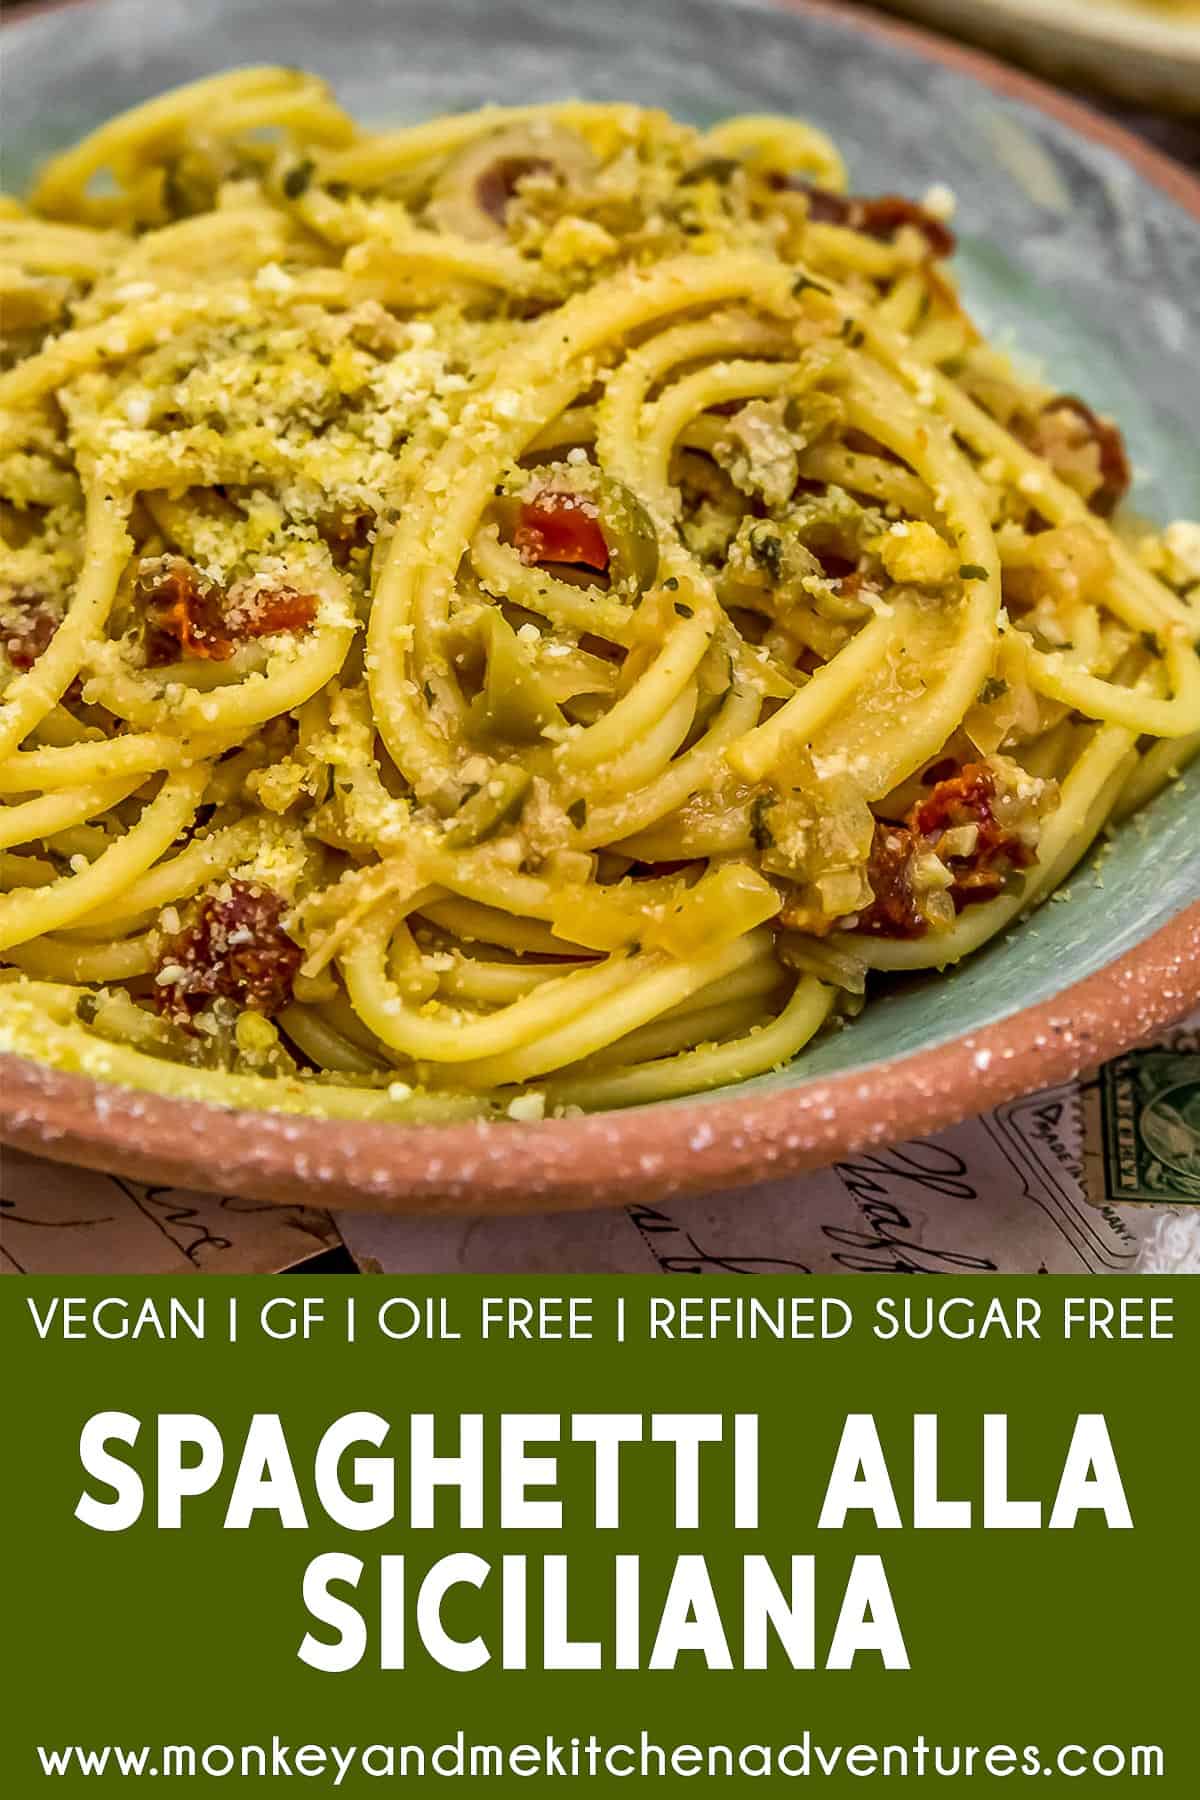 Spaghetti alla Siciliana with text description